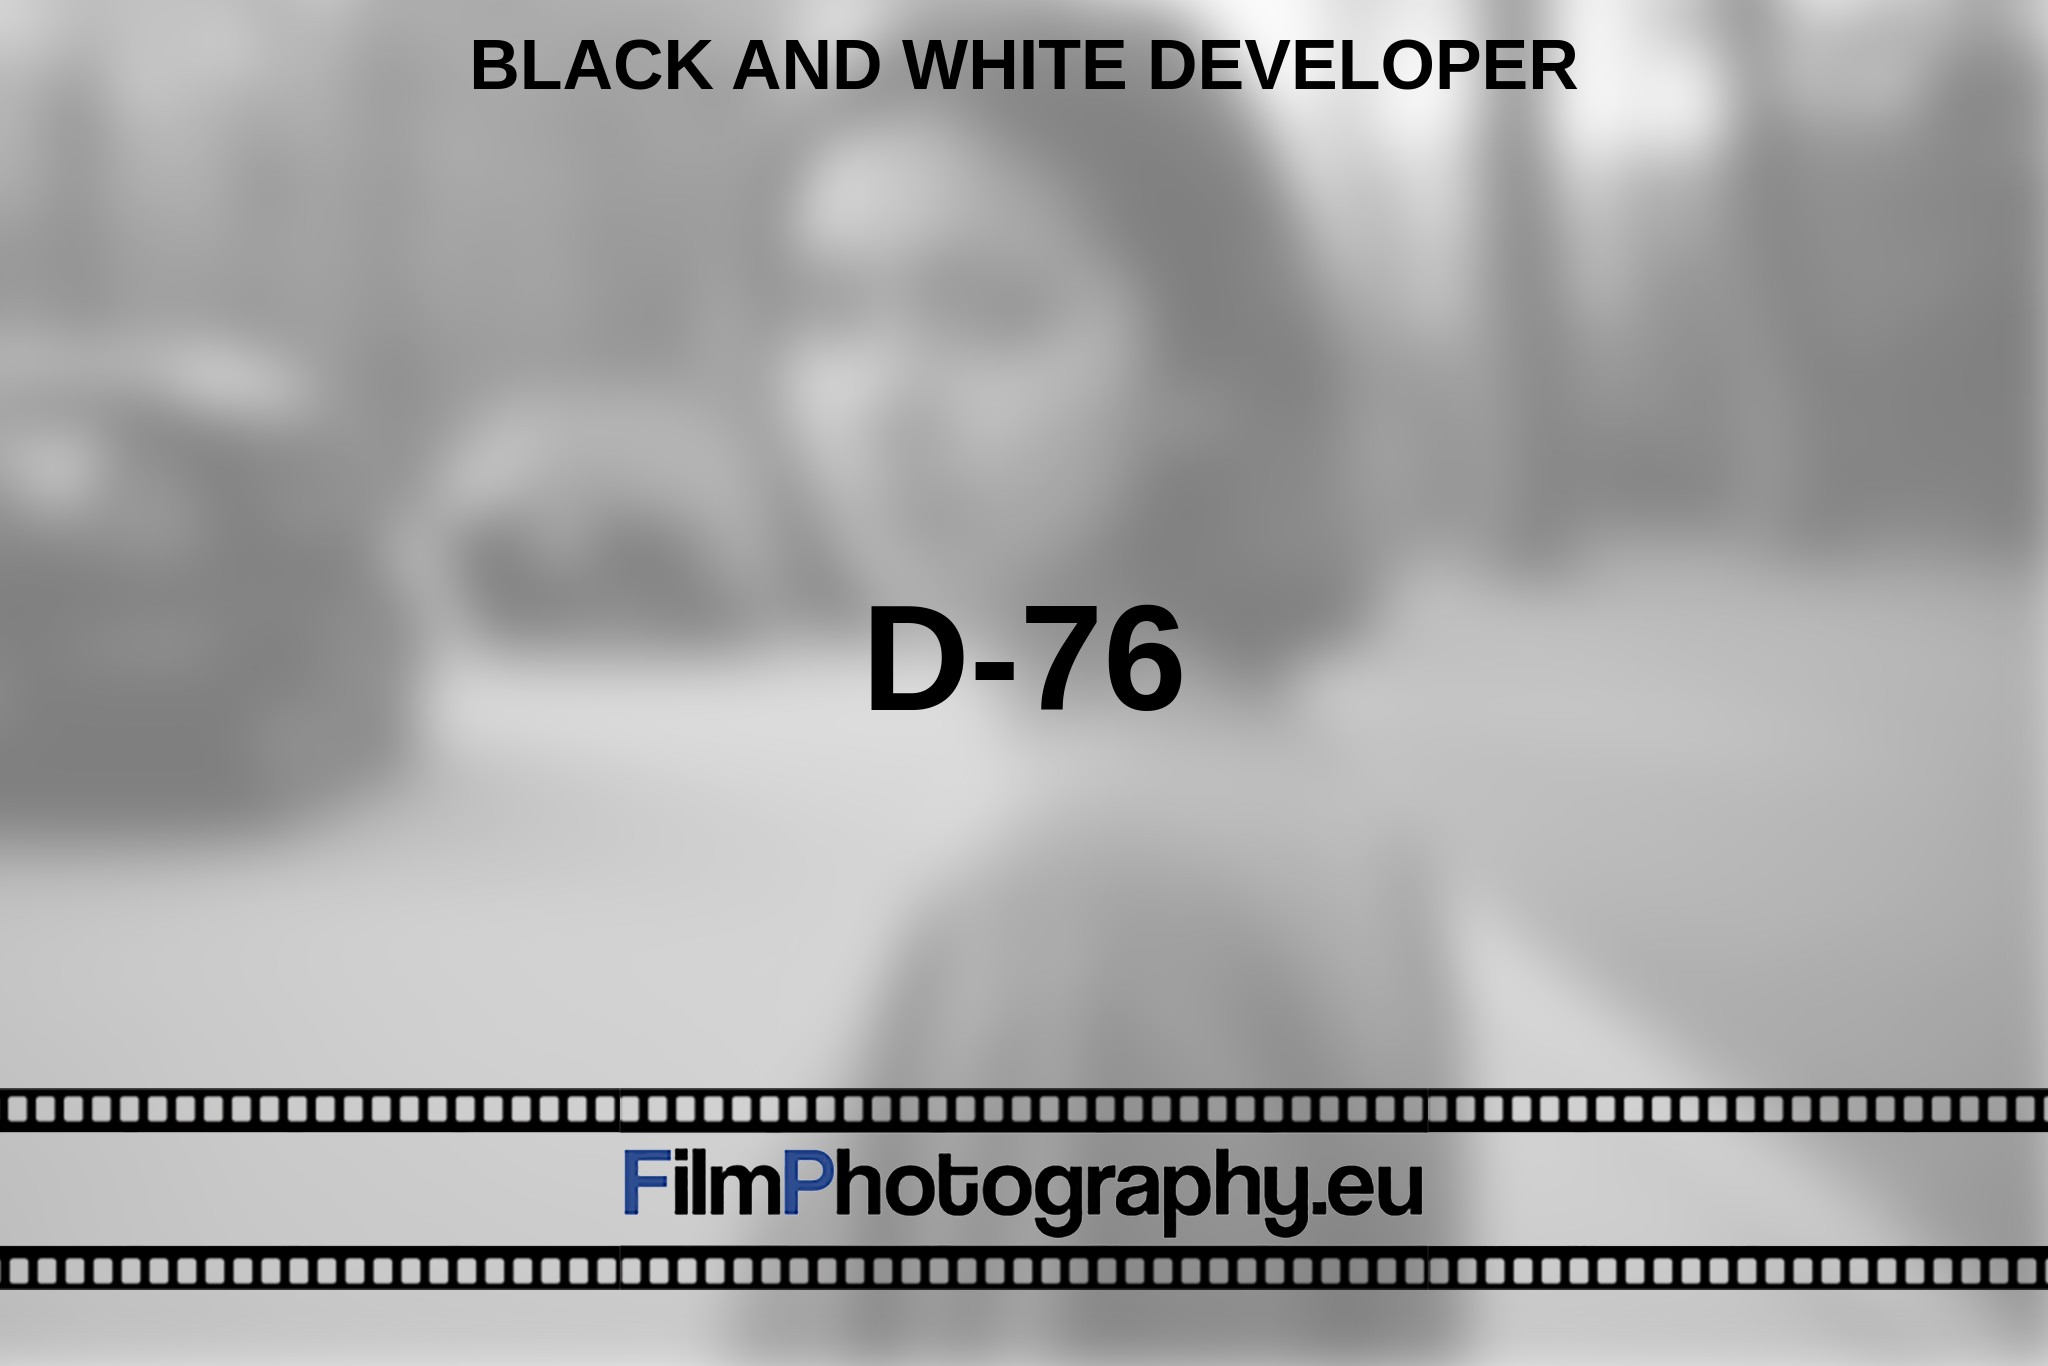 d-76-black-and-white-developer-en-bnv.jpg